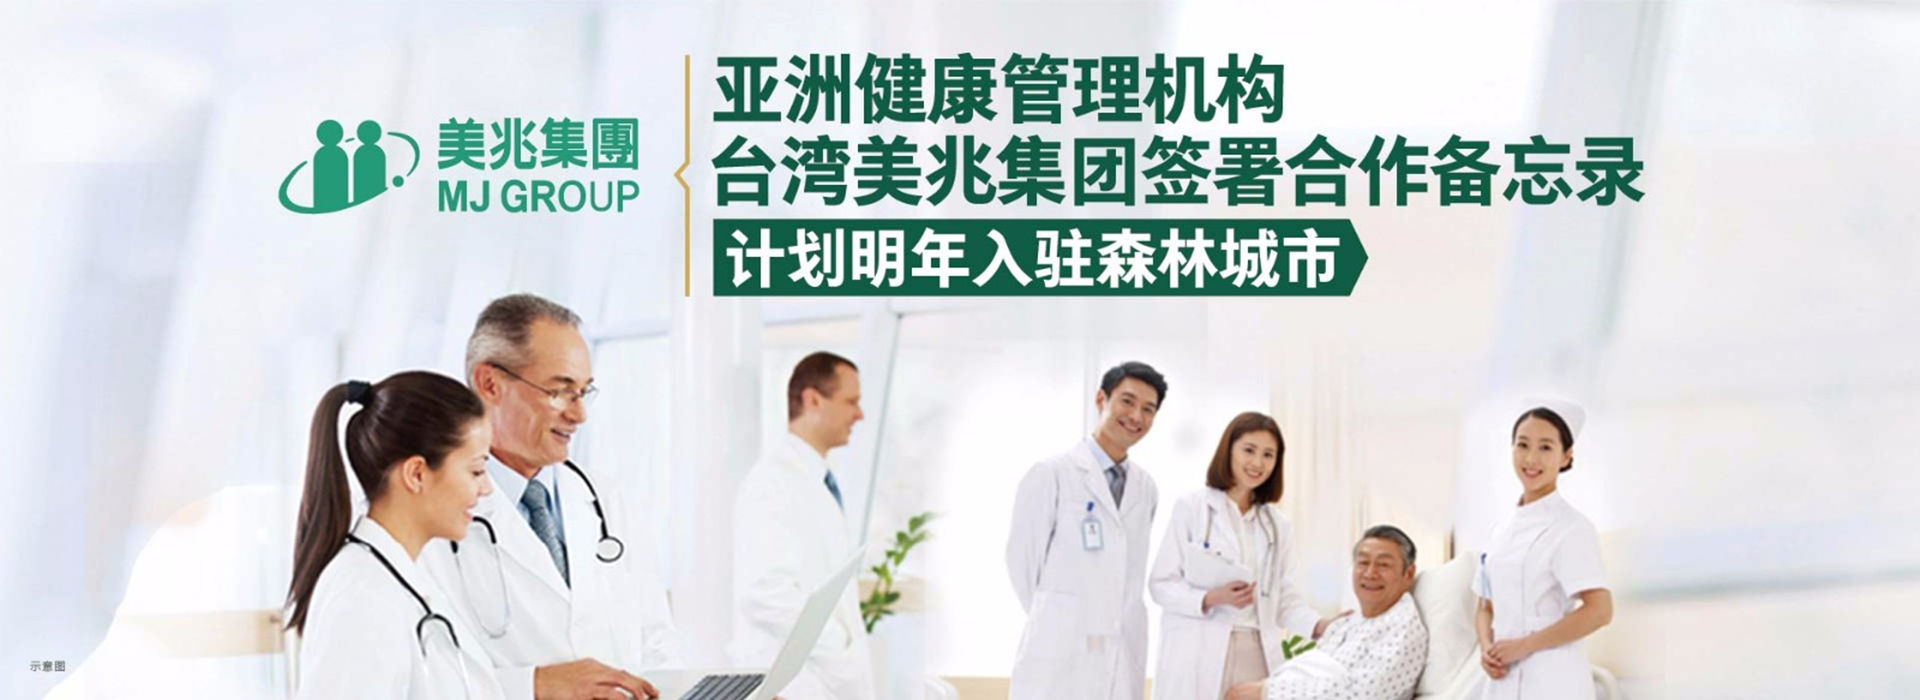 亞洲健康管理機構——臺灣美兆集團計劃入駐碧桂園森林城市